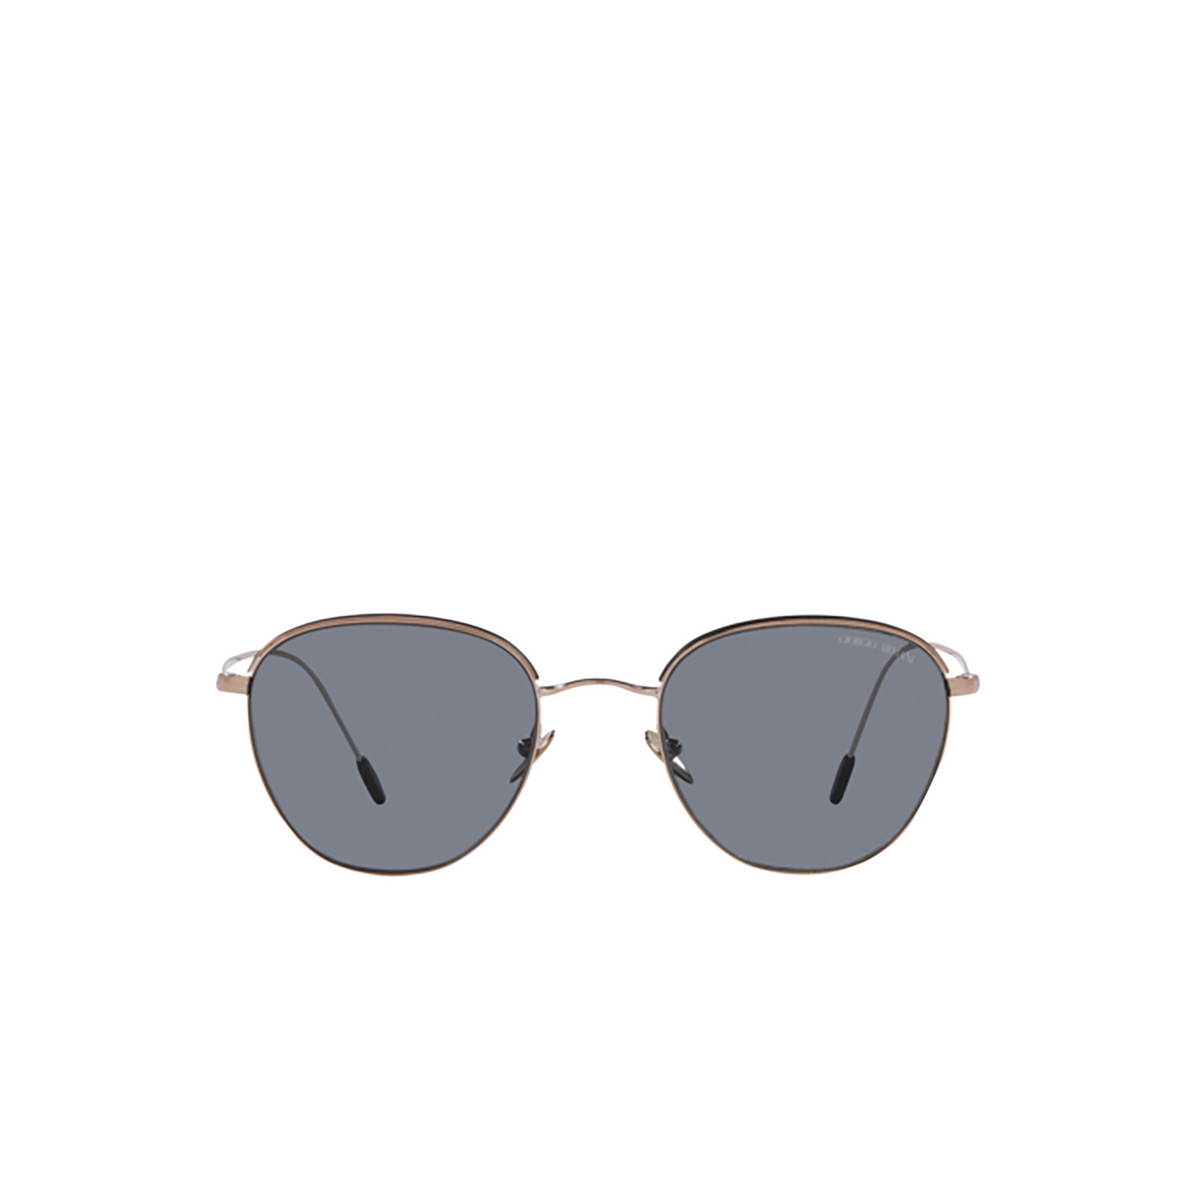 Giorgio Armani AR6048 Sunglasses 302819 Bronze / Black - front view